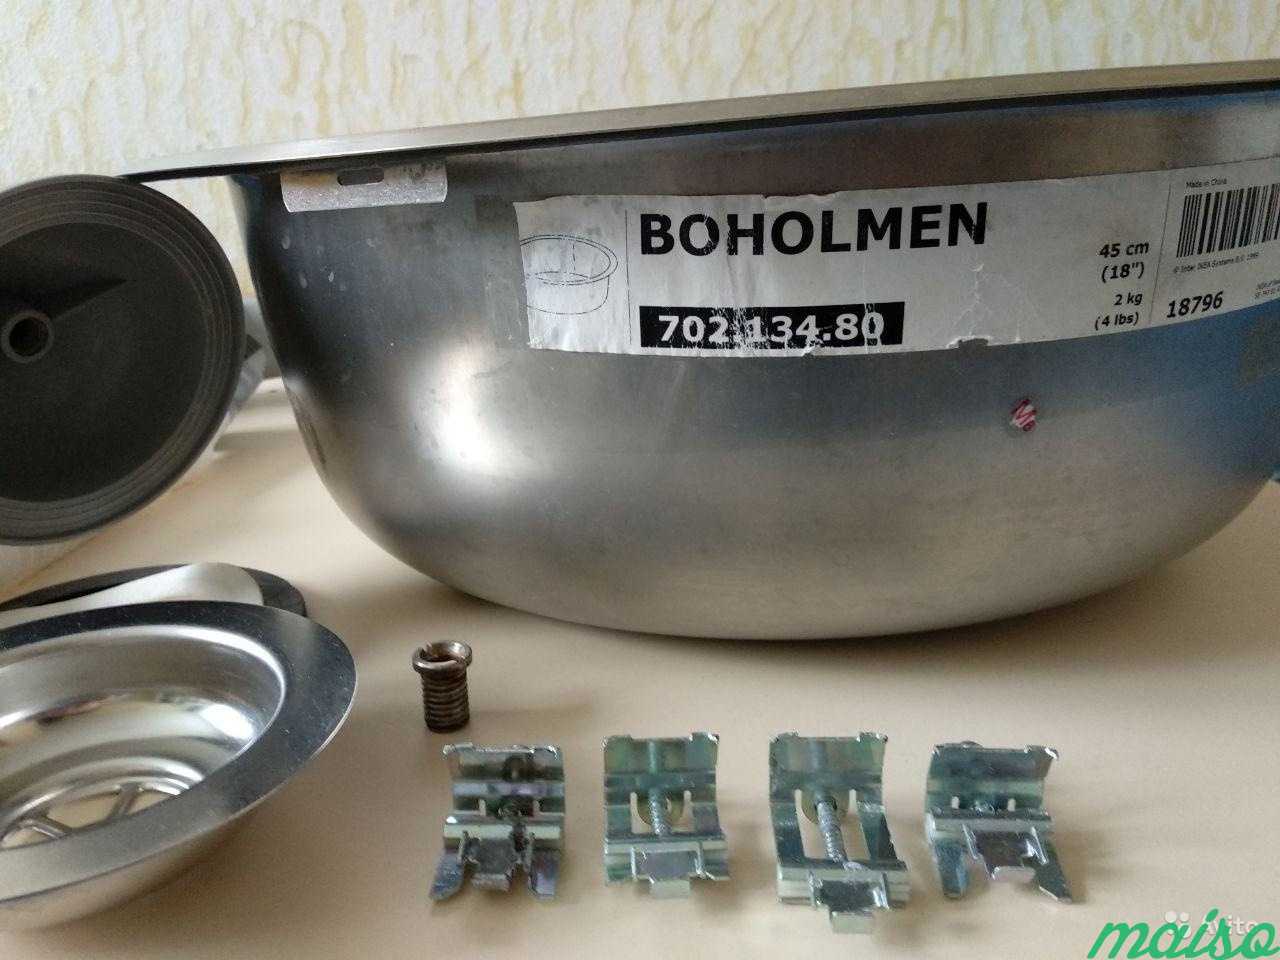 boholmen бухольмен мойка одинарная врезная нержавеющ сталь 47x30 см